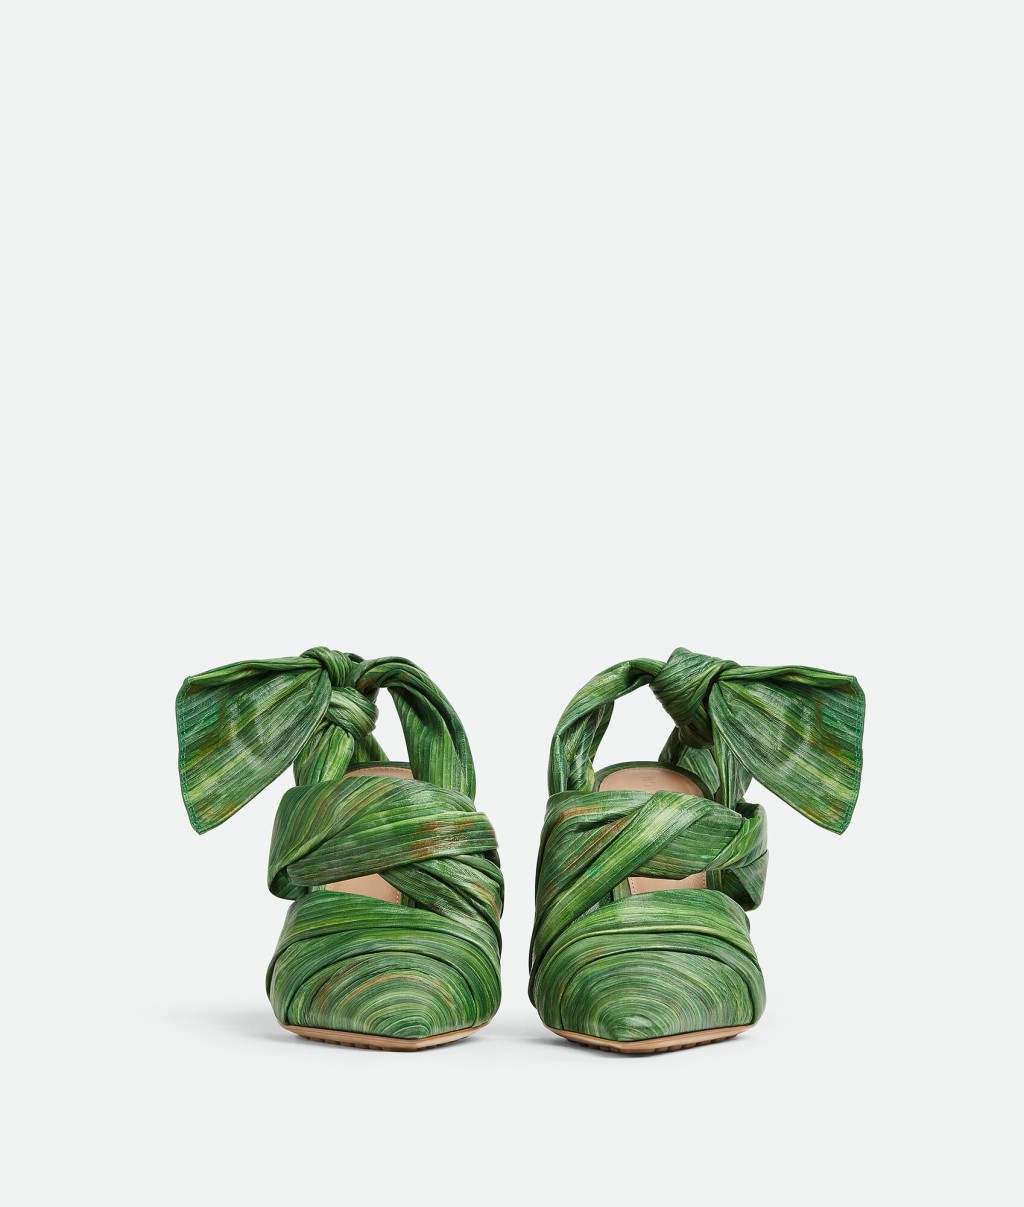 高海寧所穿的高踭鞋就是設計師以熱帶樹葉作靈感，以熱帶樹葉印花皮革製成的露跟高跟鞋。